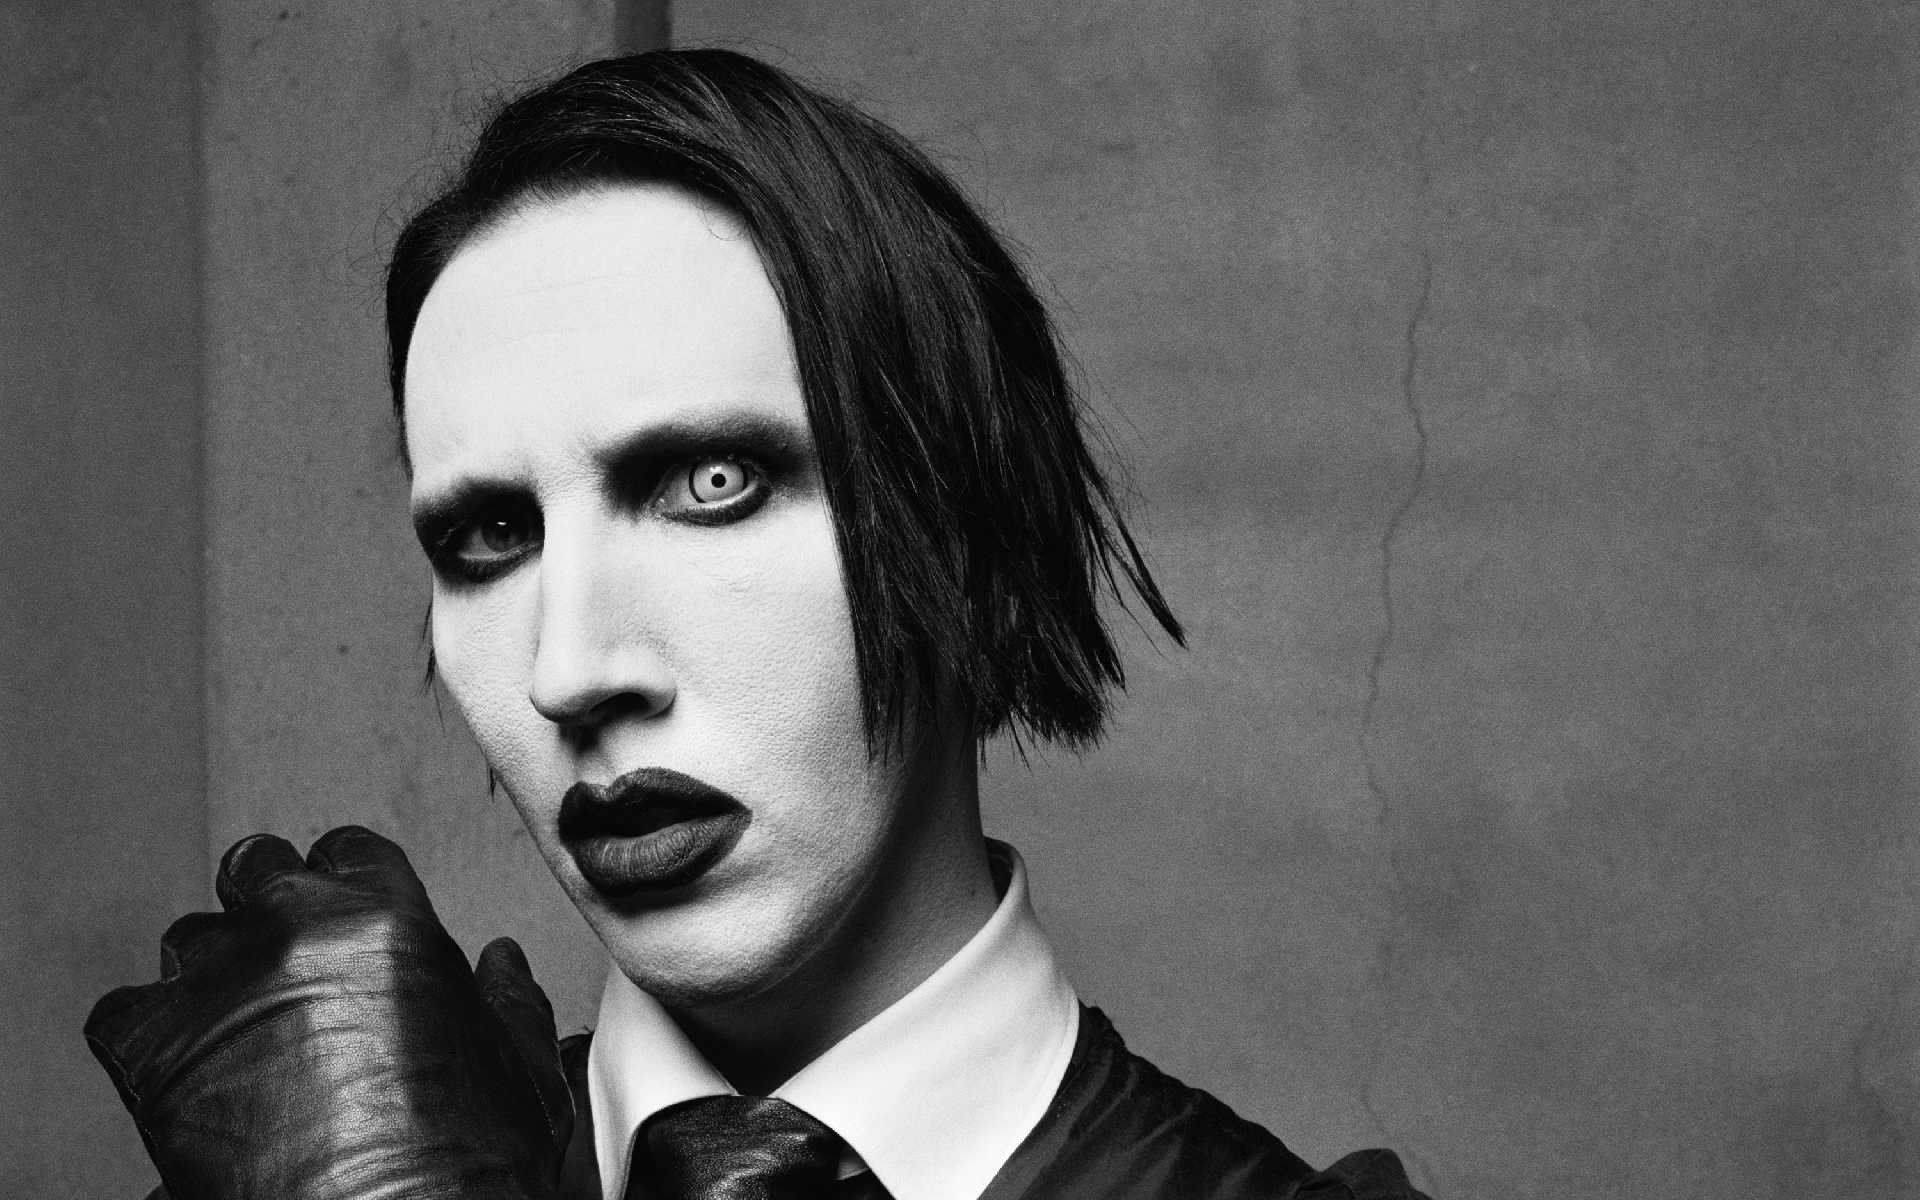 The Shock Rocker Marilyn Manson